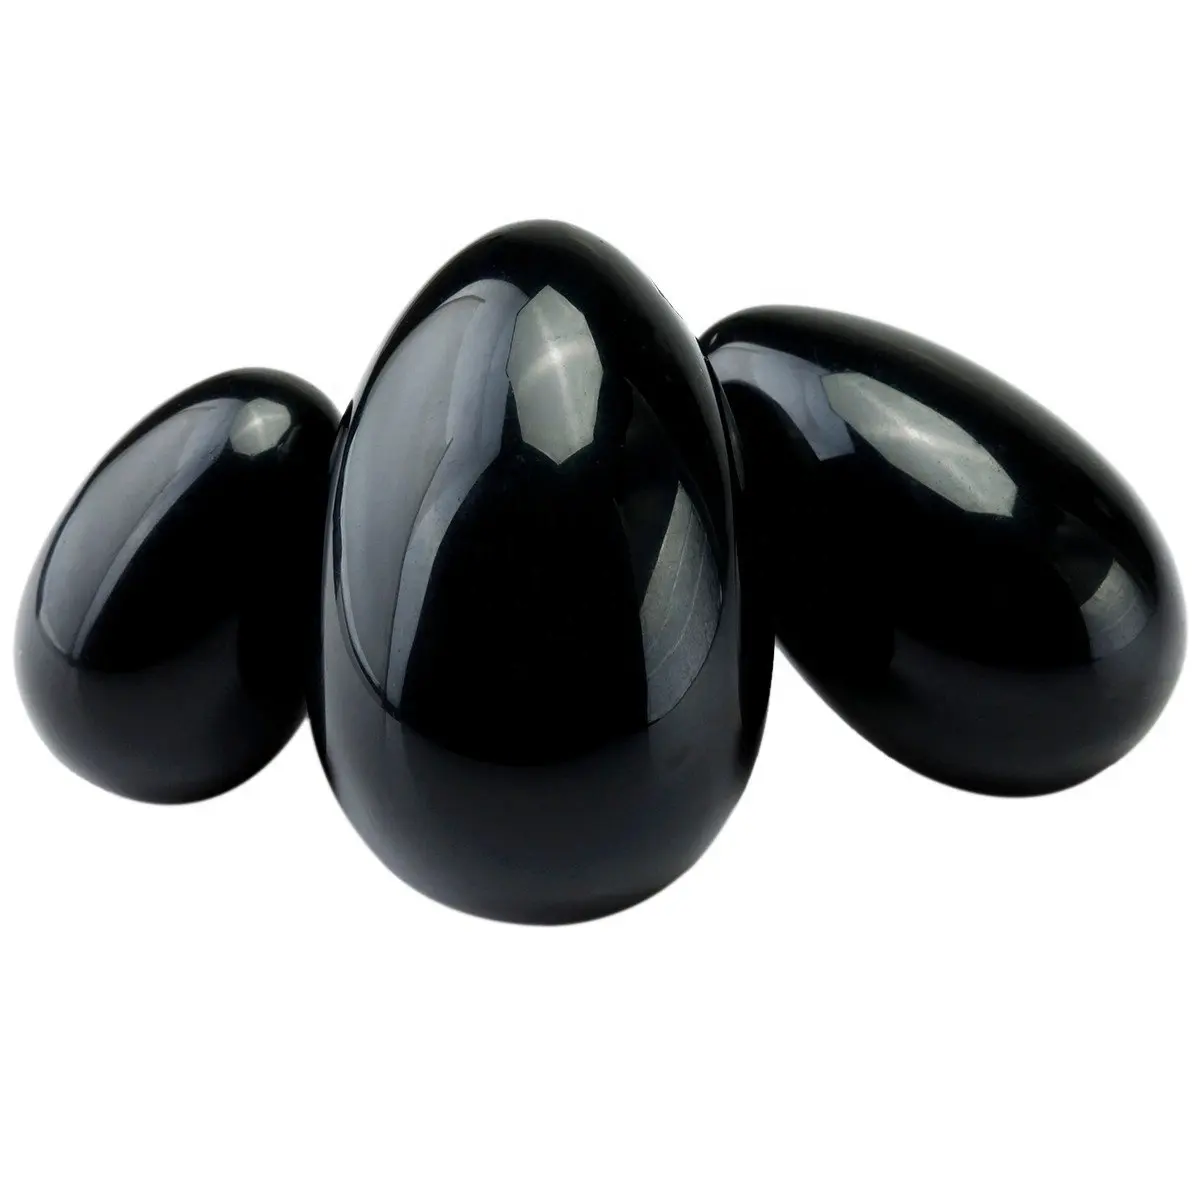 Prodotti Yoni all'ingrosso Eggd pietra nera naturale uova Yoni in vendita uovo di cristallo di ossidiana nera Set uovo di ossidiana Yoni